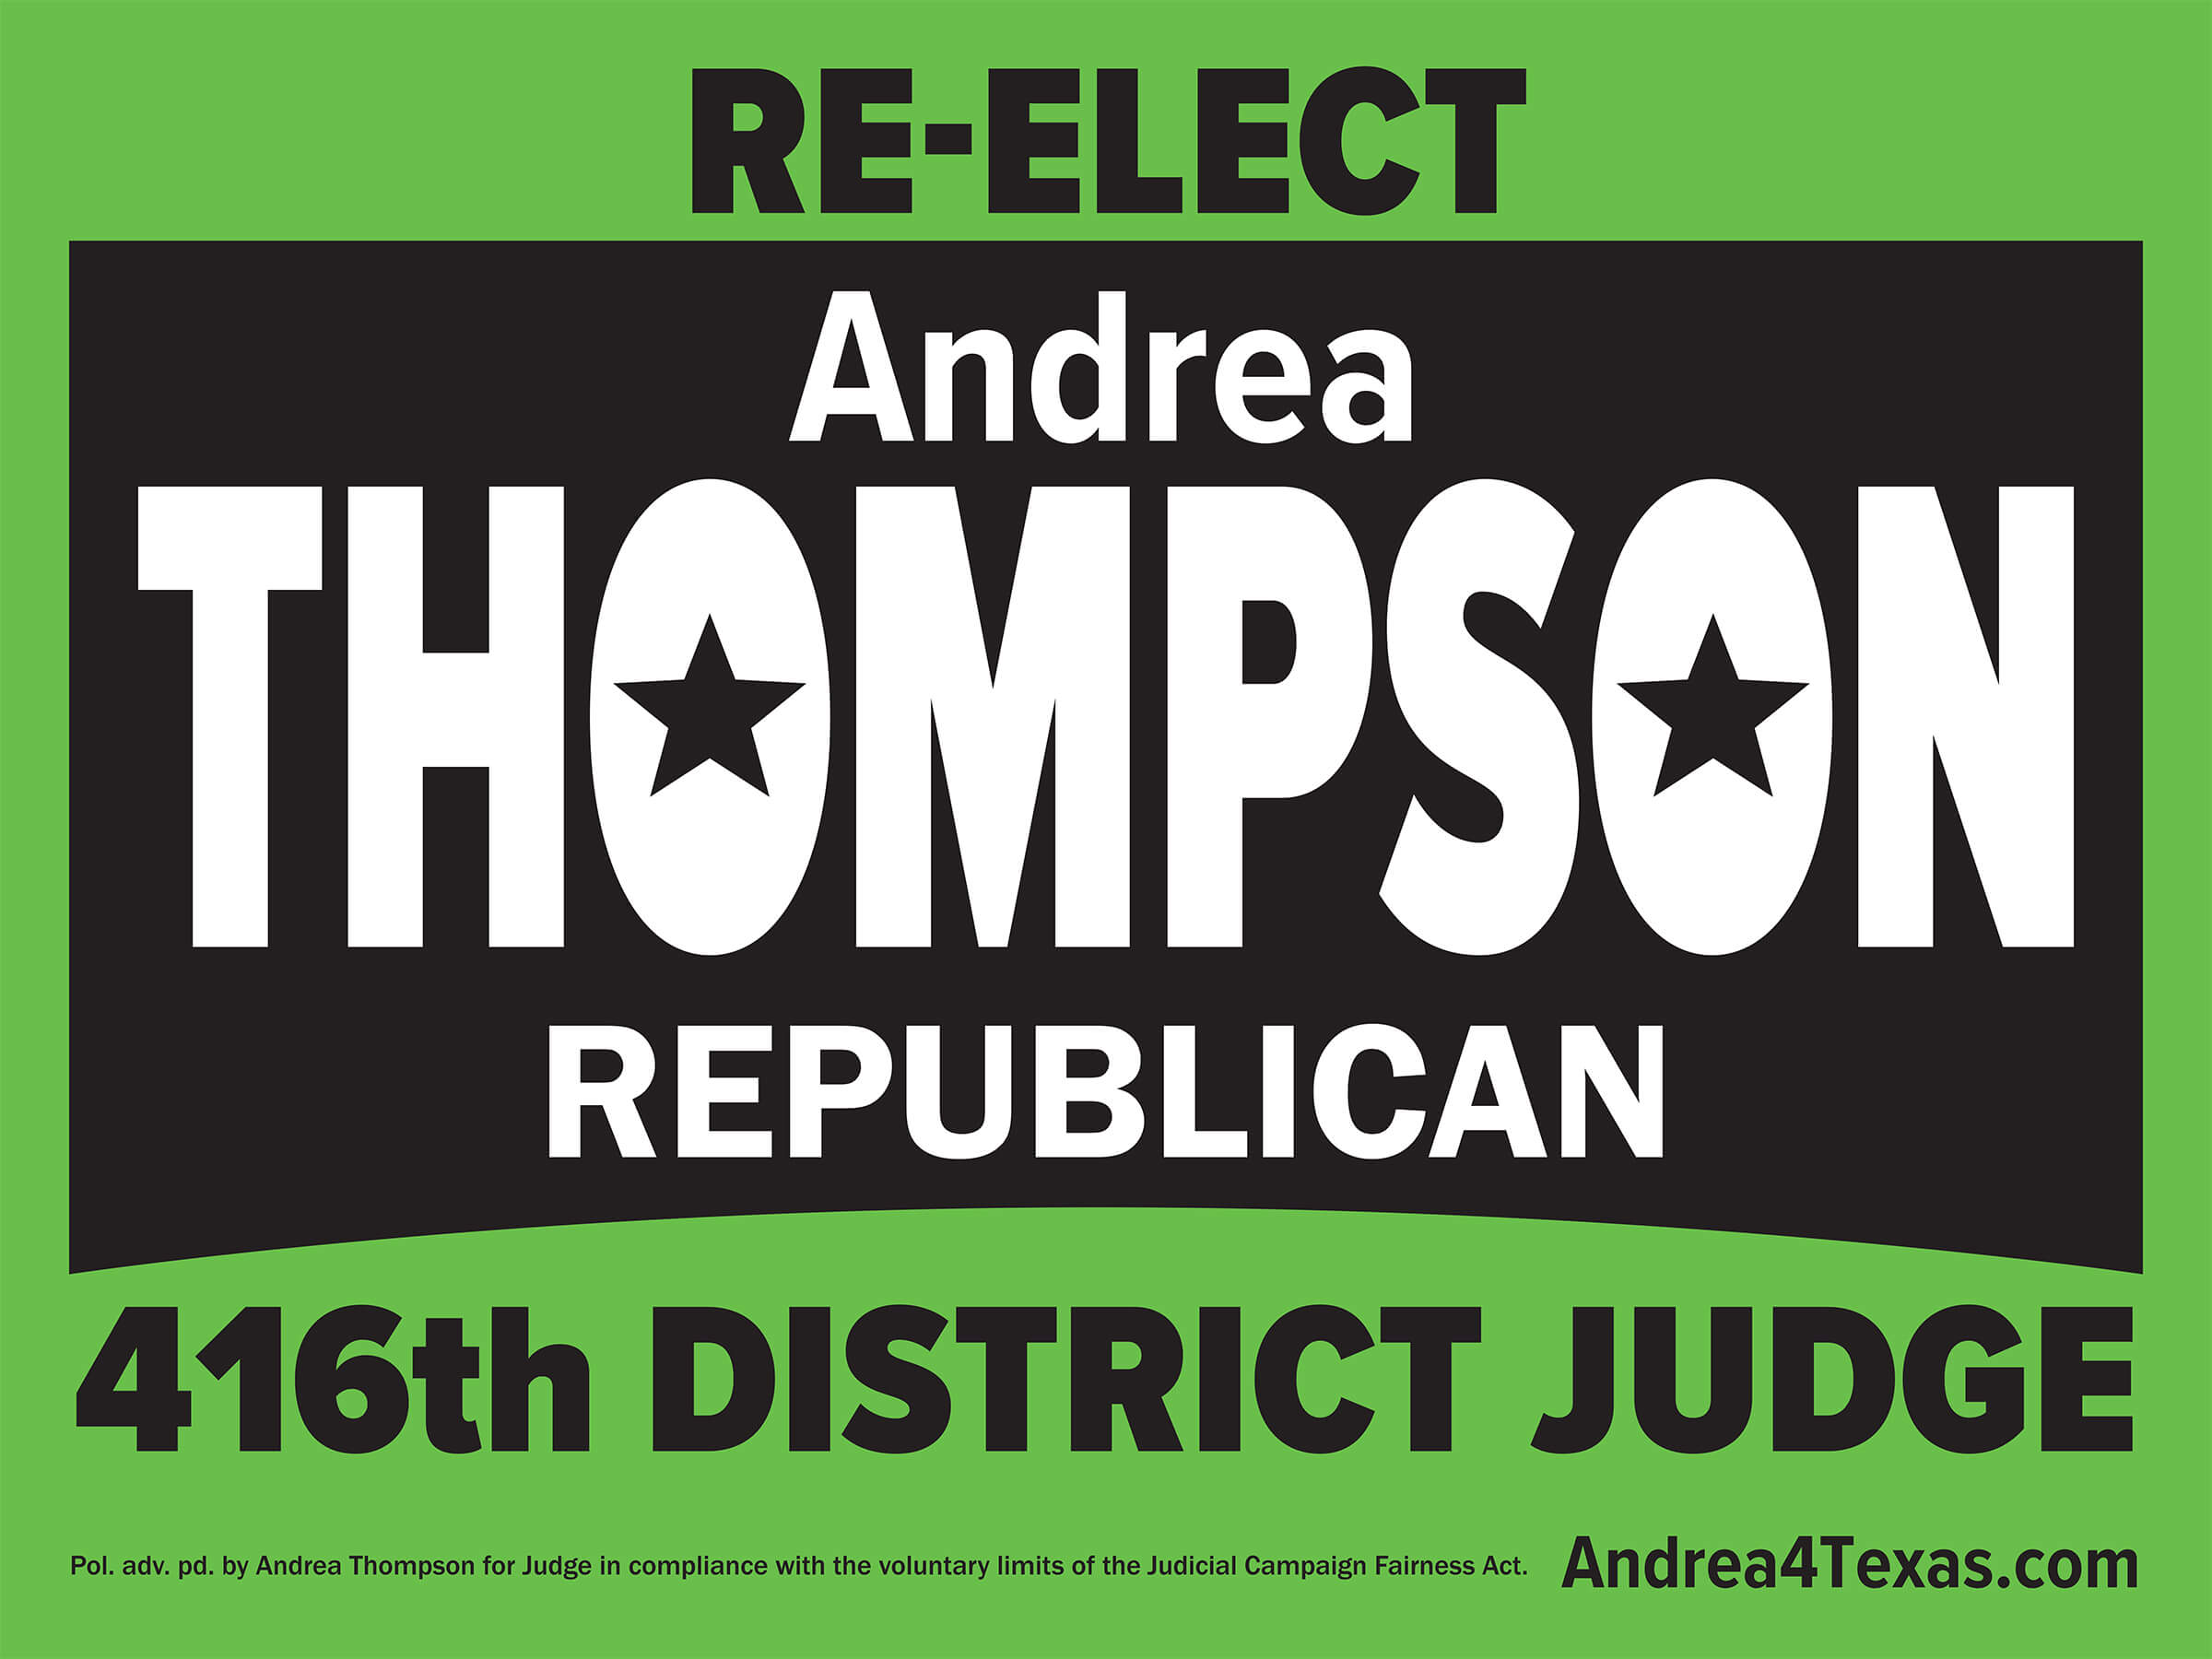 Andrea Thompson